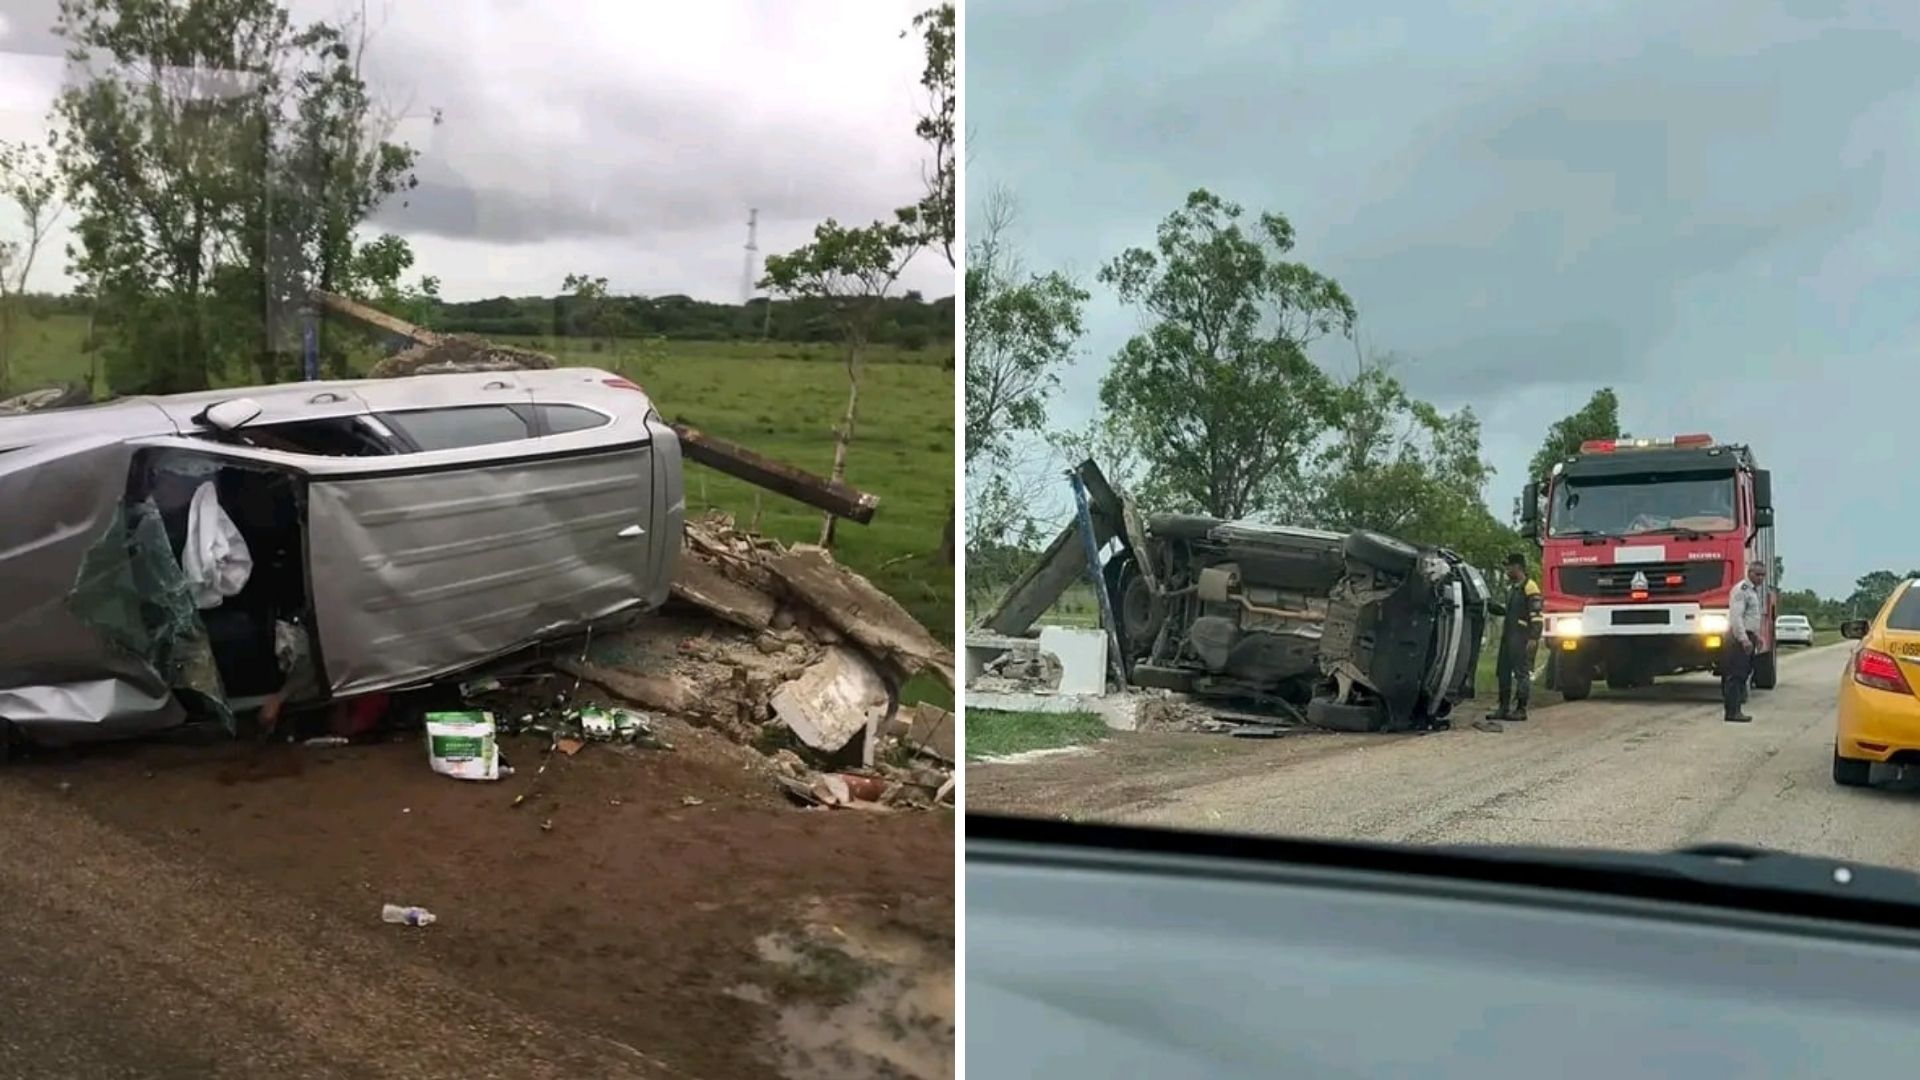 Según el post del comunicador Maikel González en Facebook, el siniestro ocurrió el domingo alrededor de las 5:45 p.m en los límites de las provincias Camagüey y Ciego de Ávila